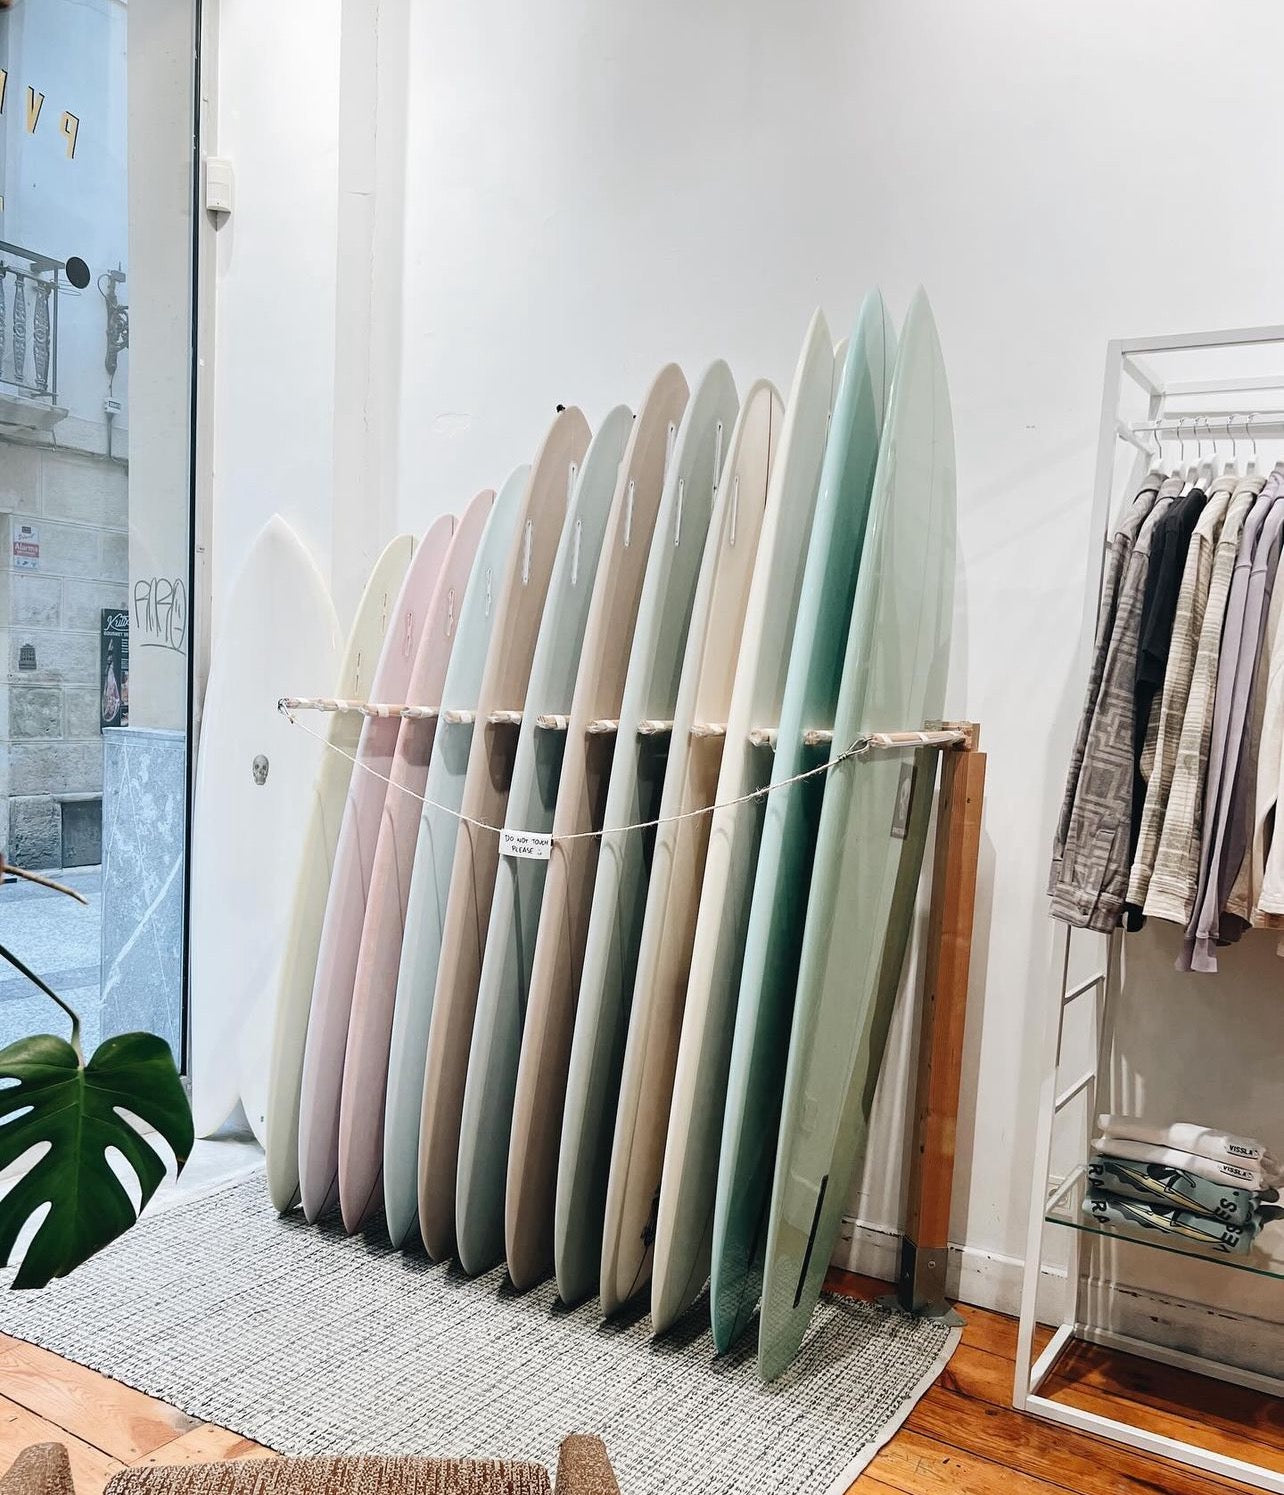 About, PUKAS SURF SHOP